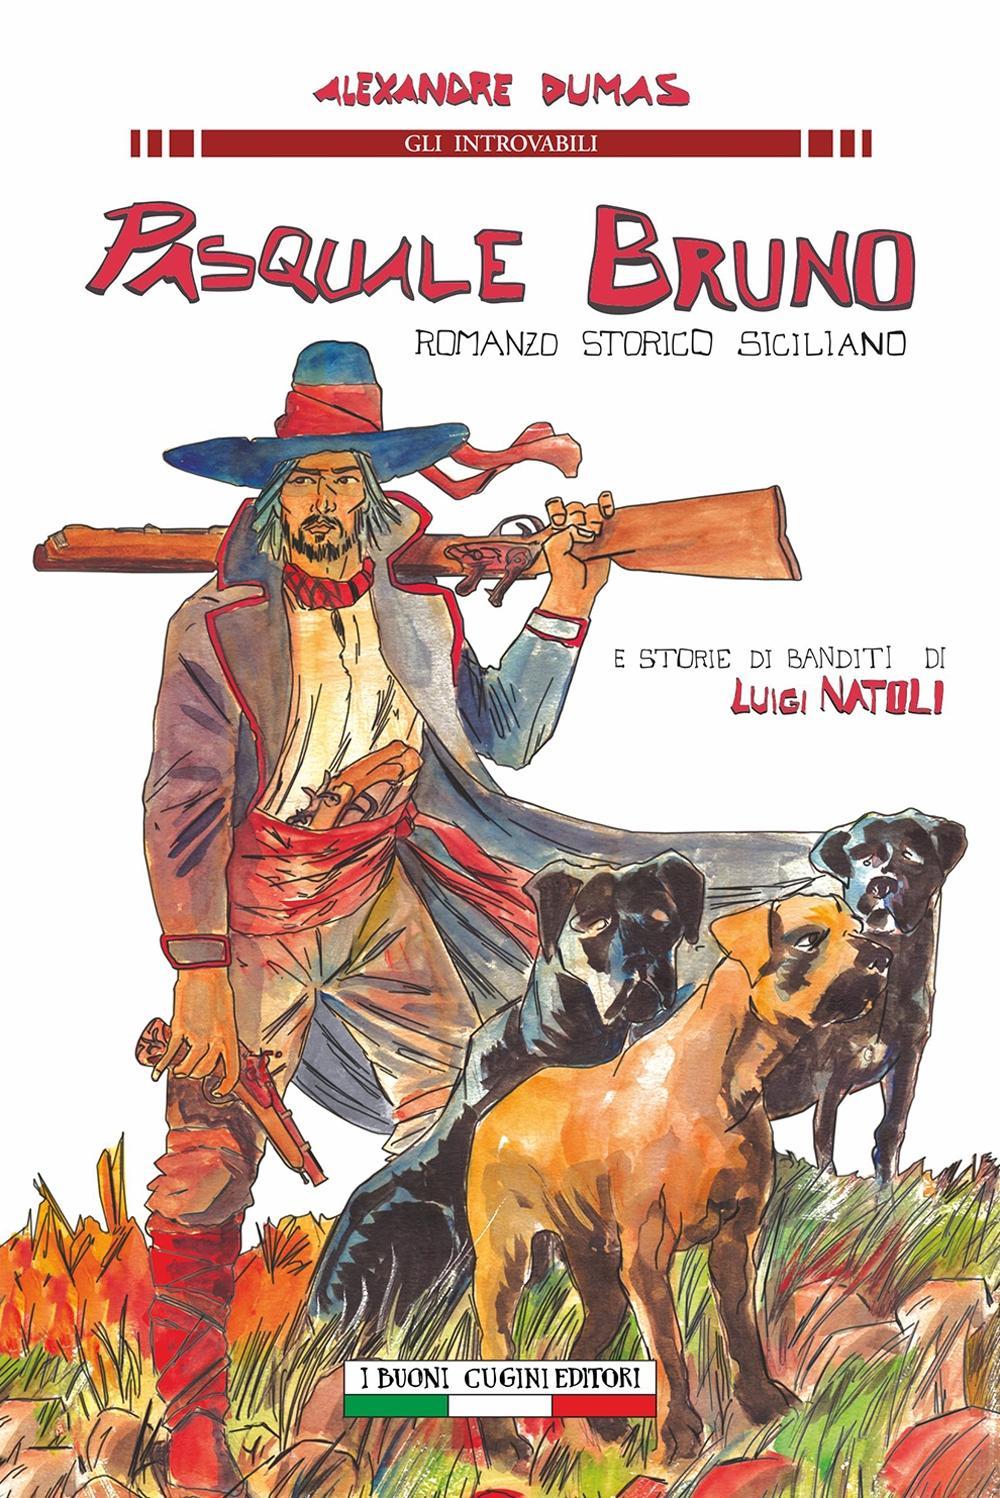 Pasquale Bruno. Romanzo storico siciliano